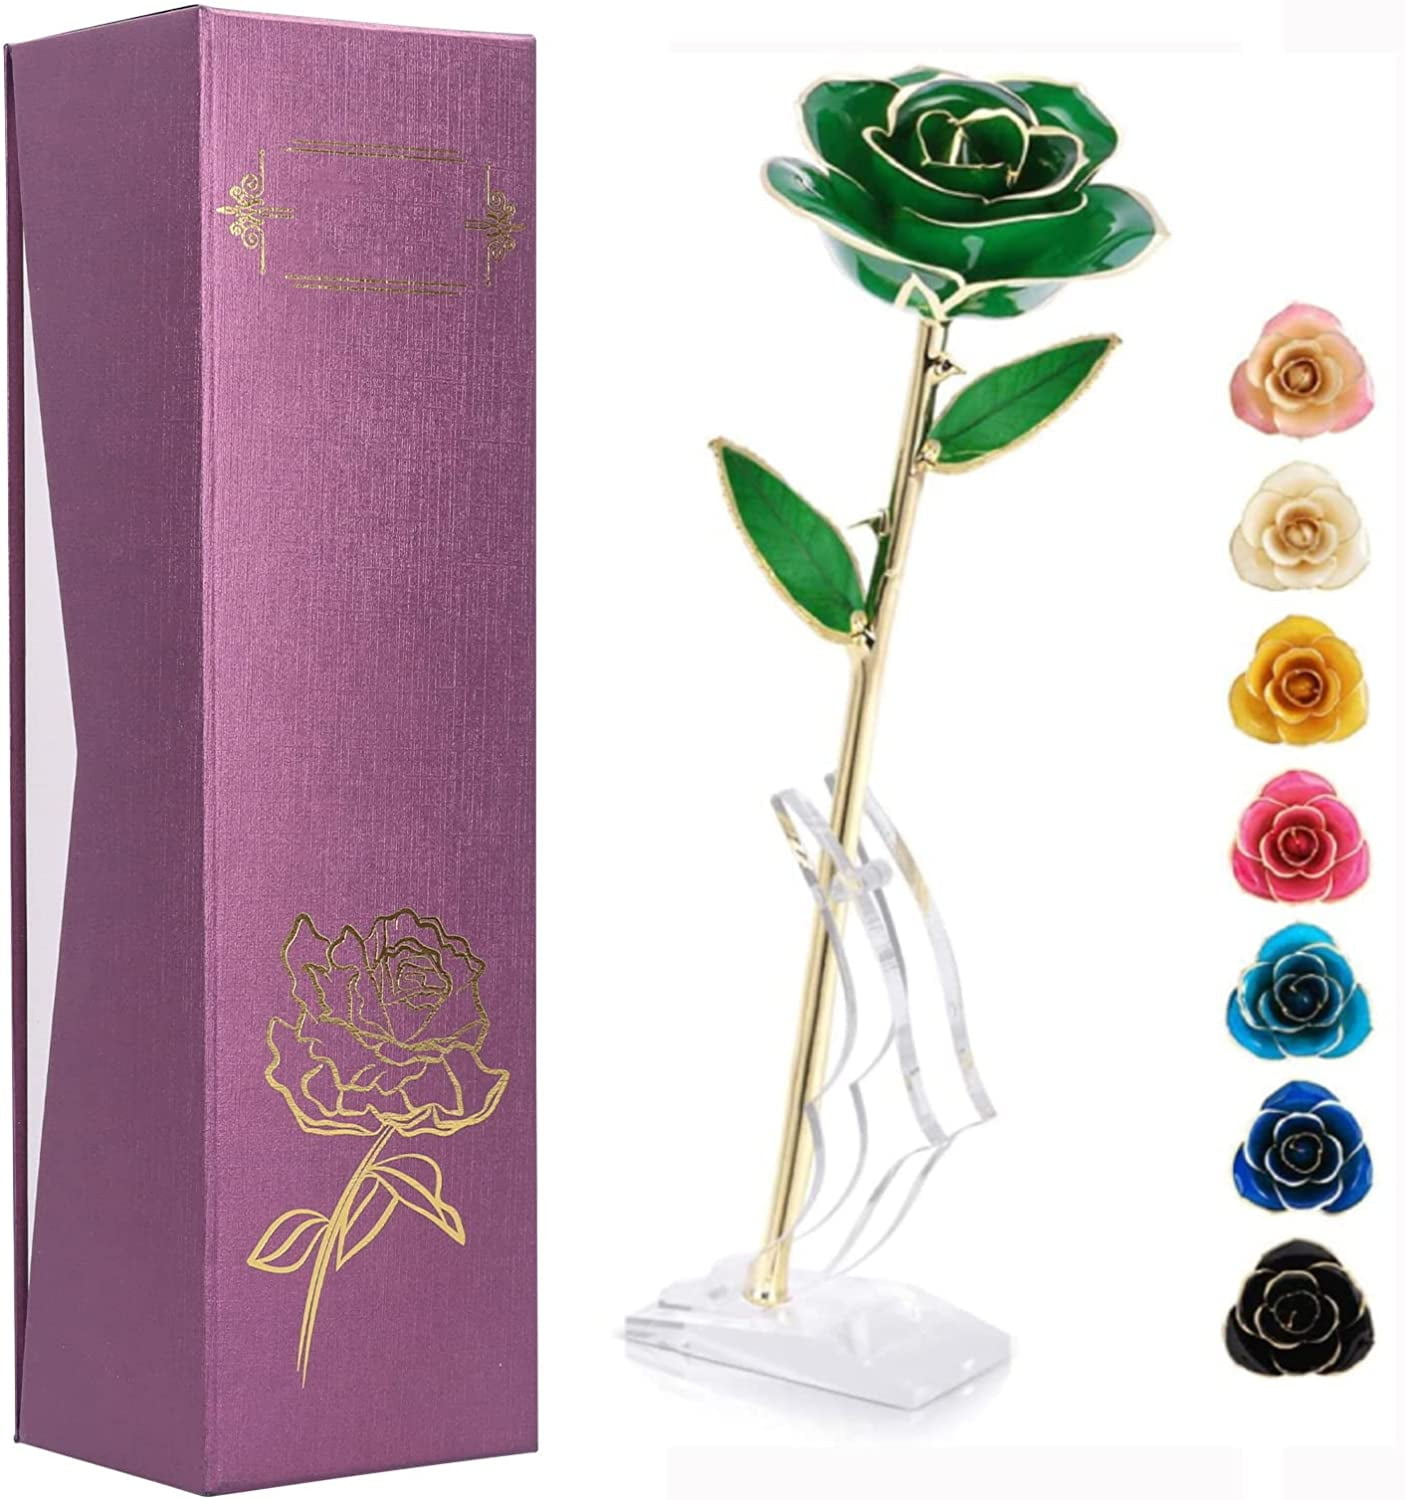 Premium Gold Dipped Rose Flower Gift Long Stem 24k for Her Valentine's Day 